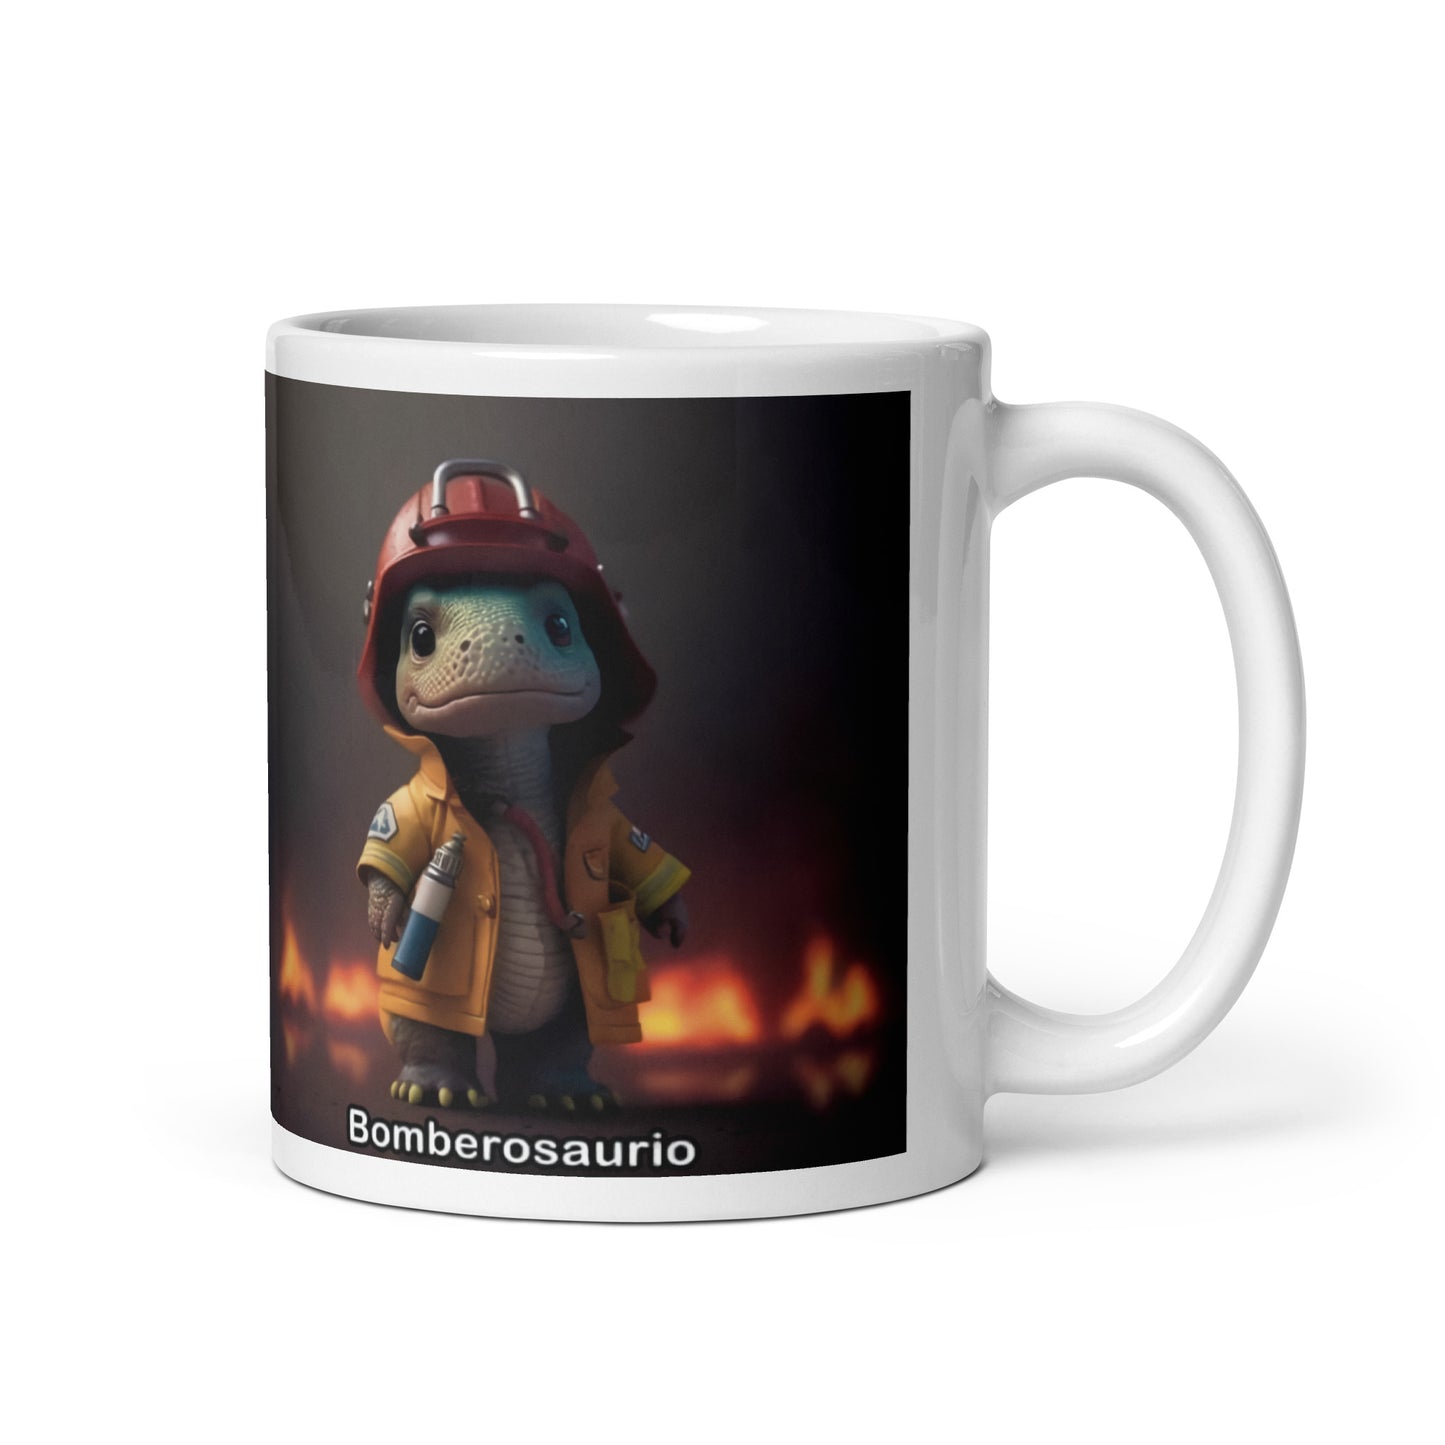 Dino Professions Firefightersaurus Mug